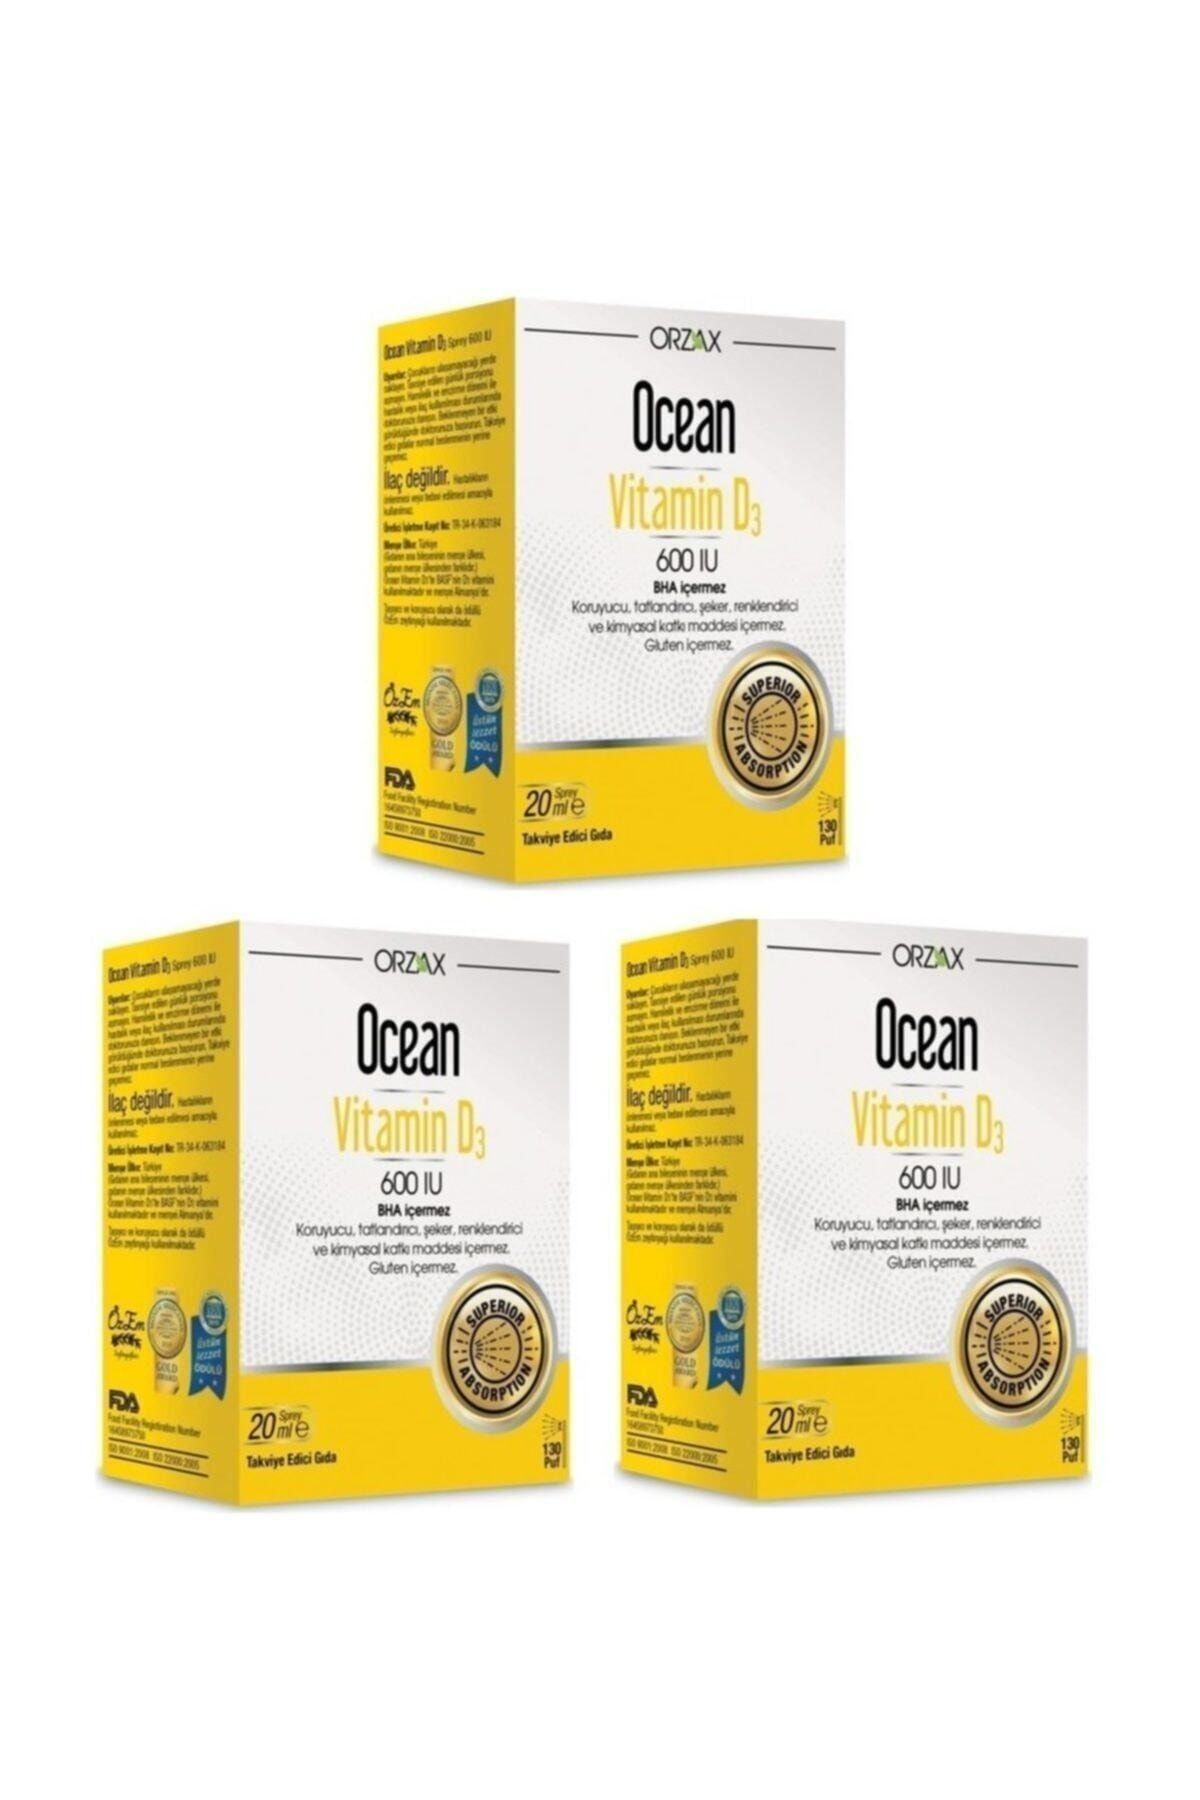 Orzax Ocean Vitamin D3 600 Iu 20 ml